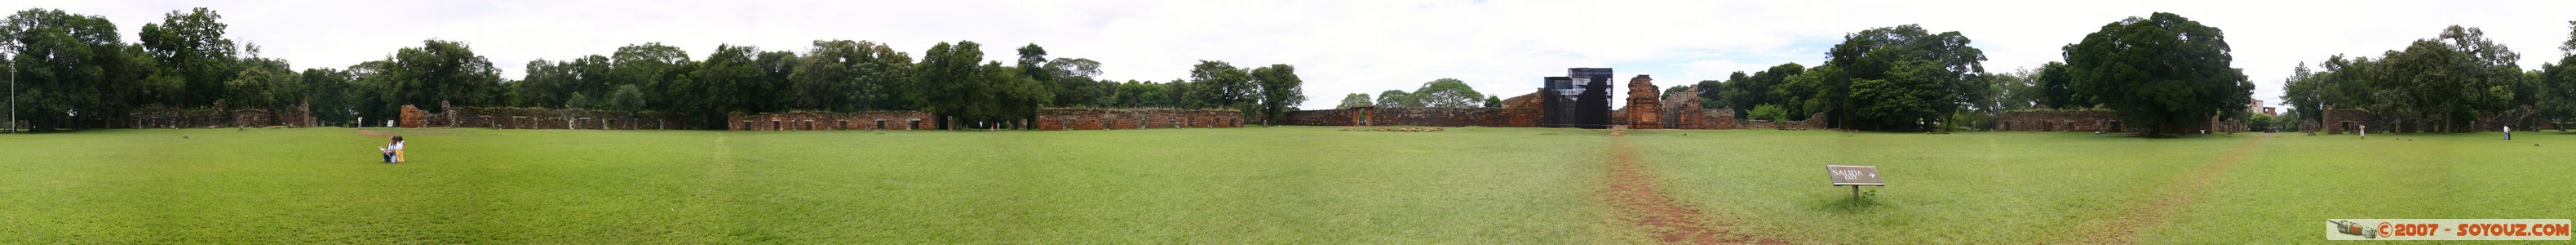 San Ignacio - Ruines Mission San Ignacio - Vue panoramique de la place centrale
